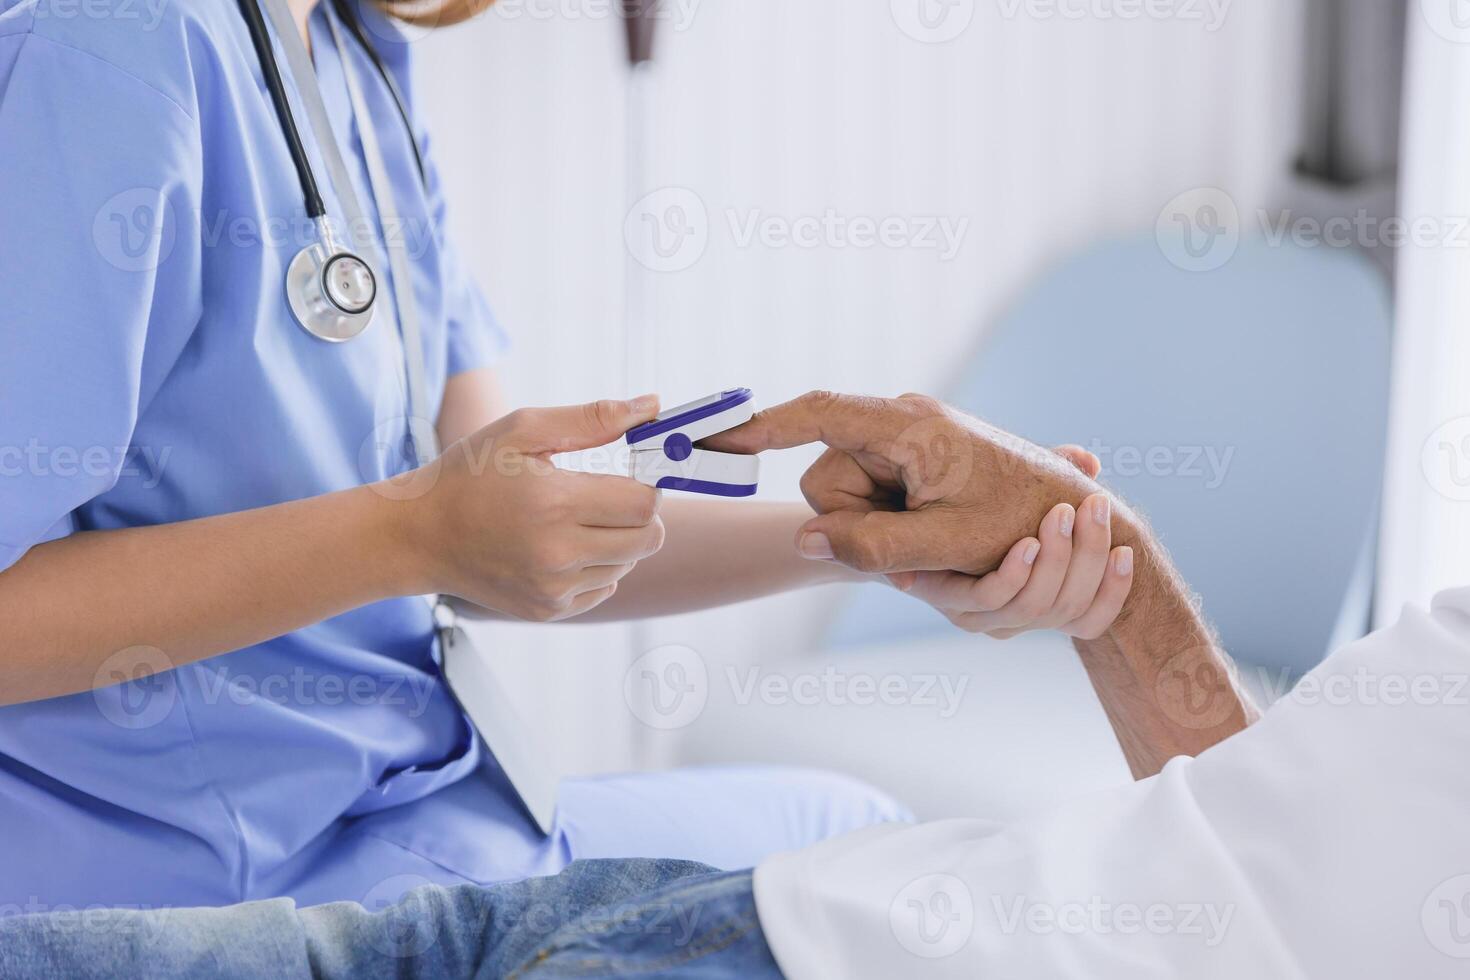 avvicinamento infermiera medico utilizzando polpastrello pausa ossimetro le misure sangue ossigeno saturazione livello con paziente foto